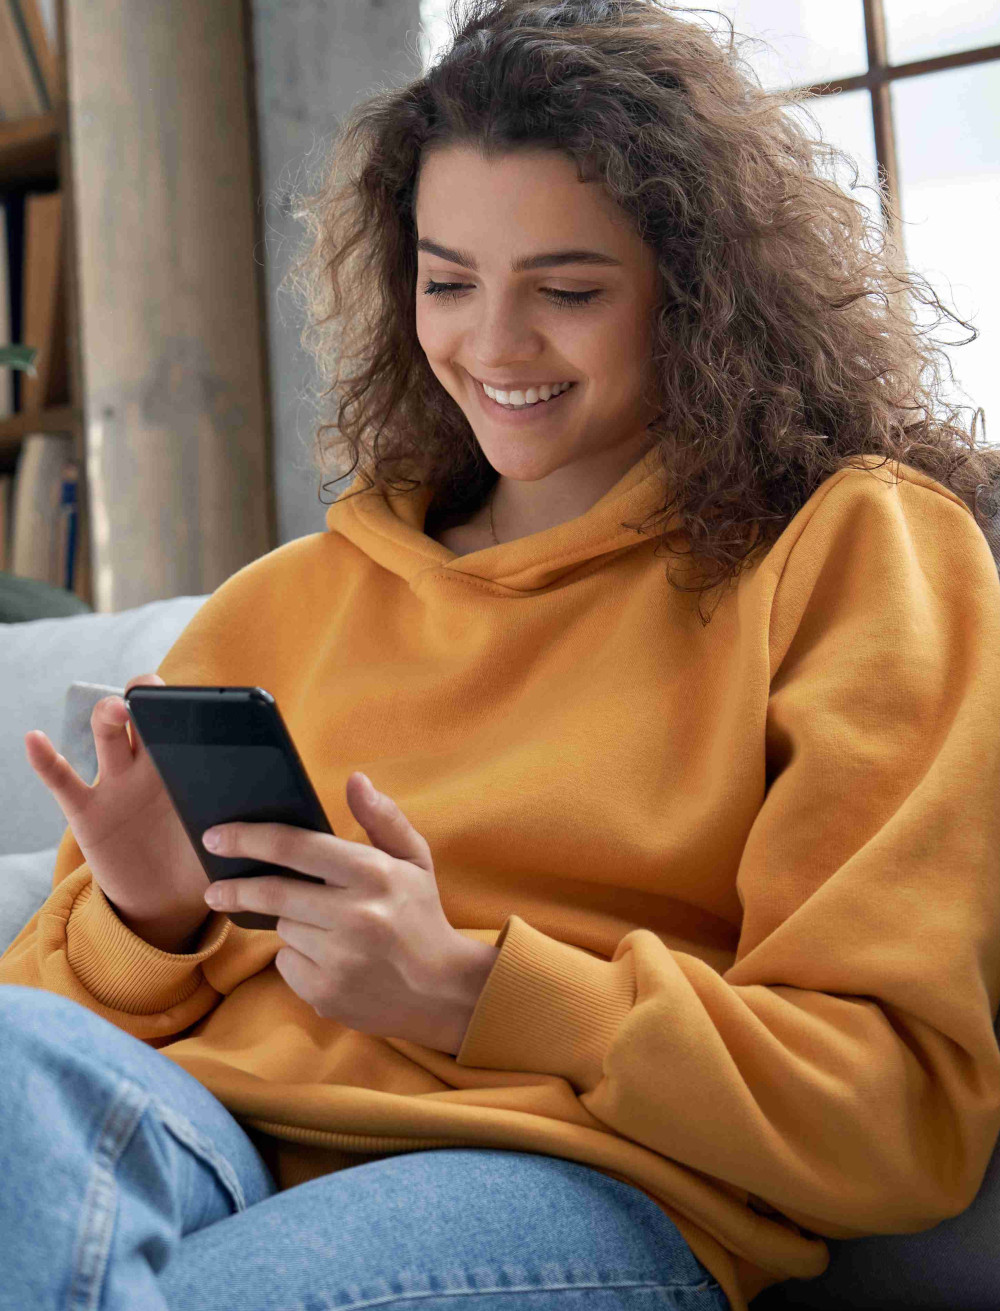 Eine lächelnde junge Frau sitzt gemütlich auf der Couch und nutzt ihr Smartphone.